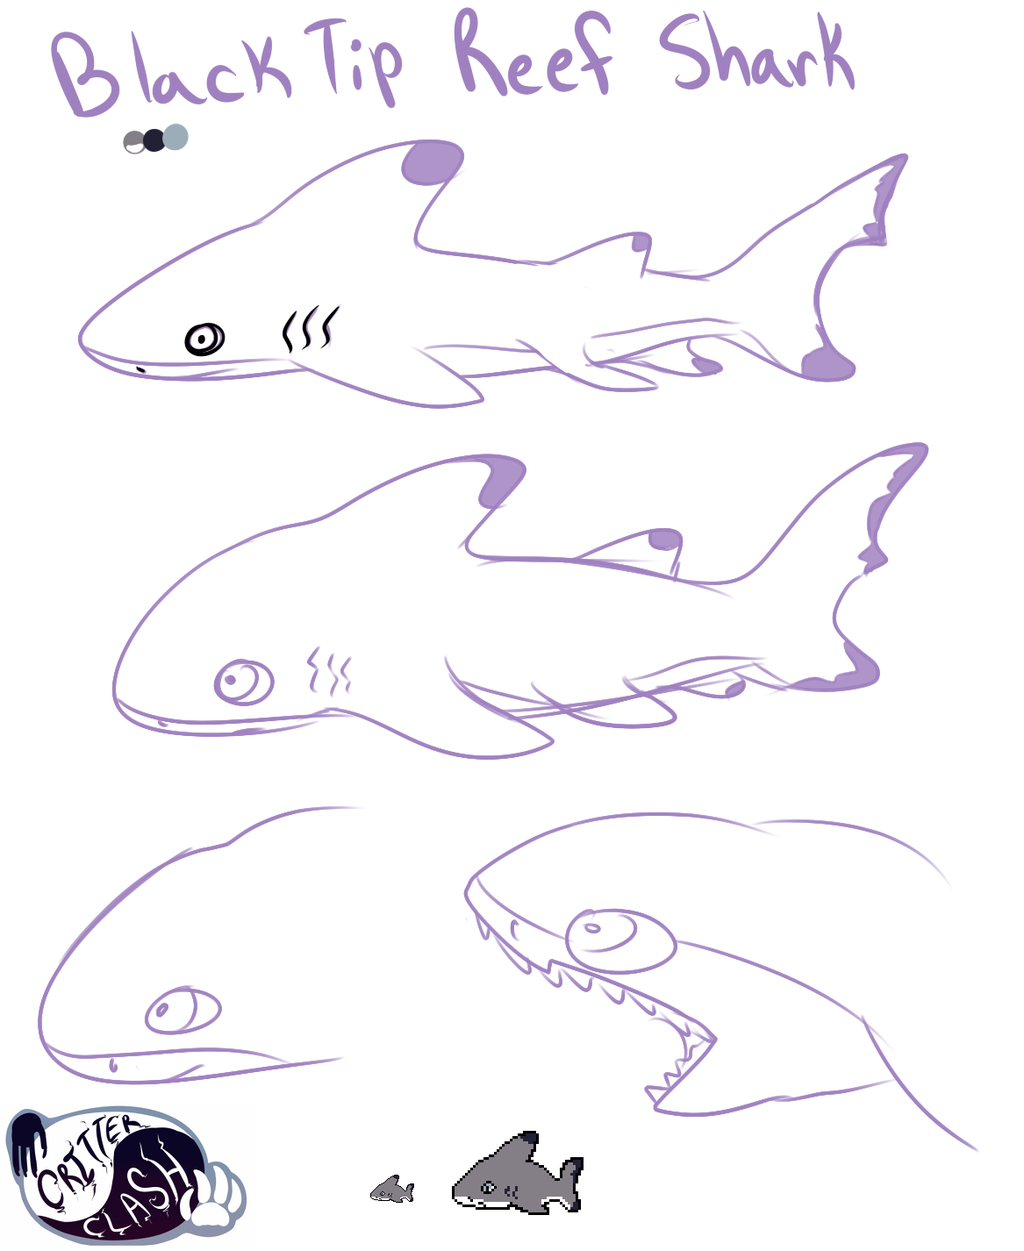 Critter Clash - Shark Creature - Concept Art